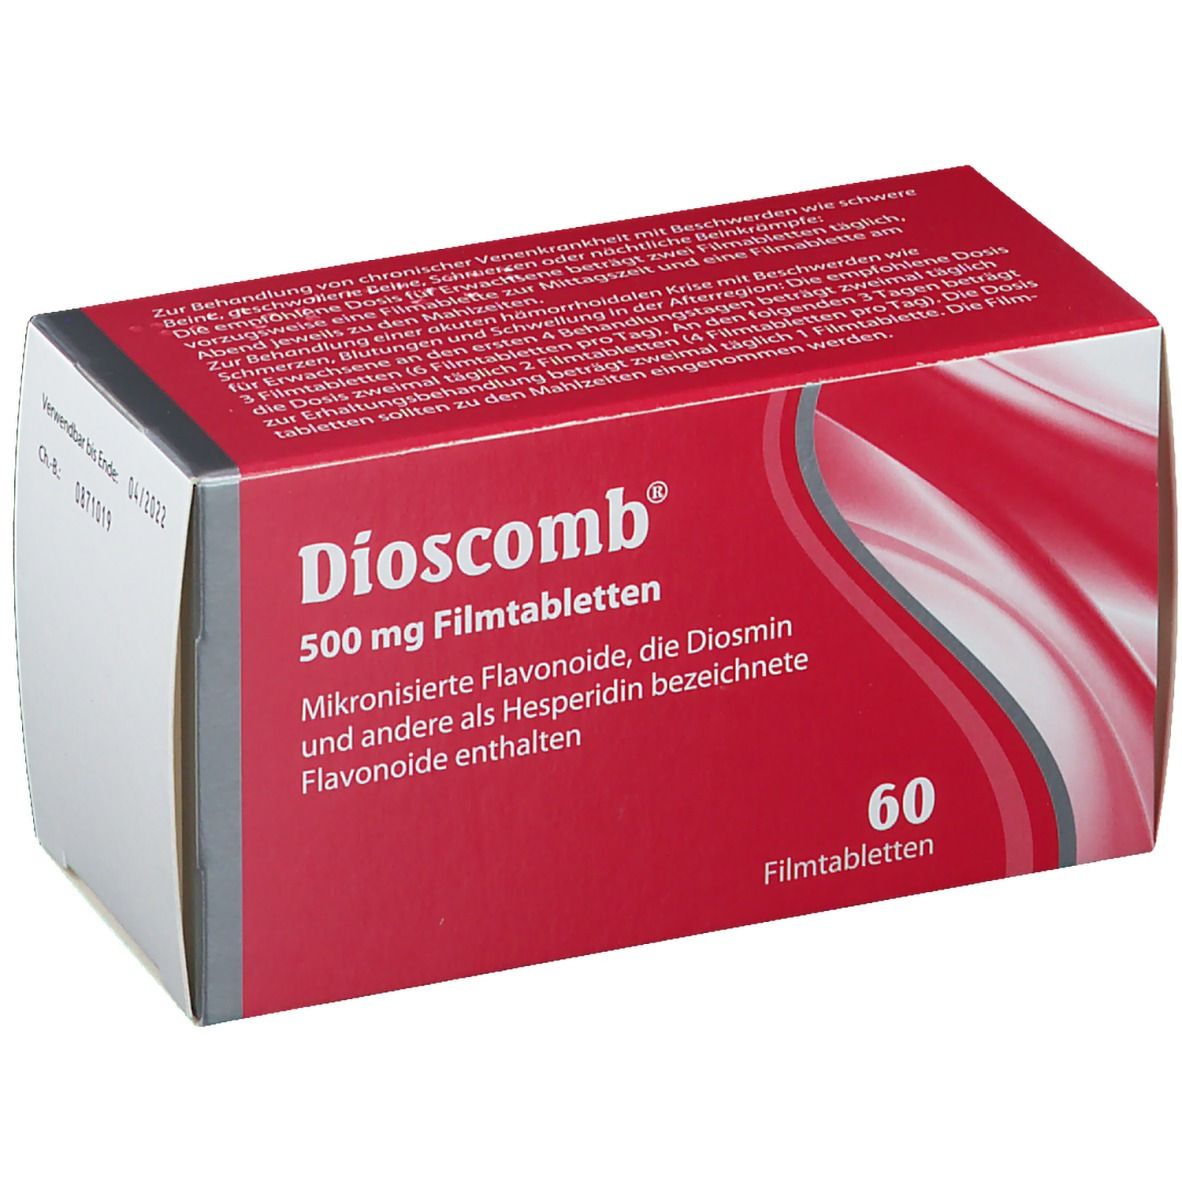 Dioscomb® 500 mg